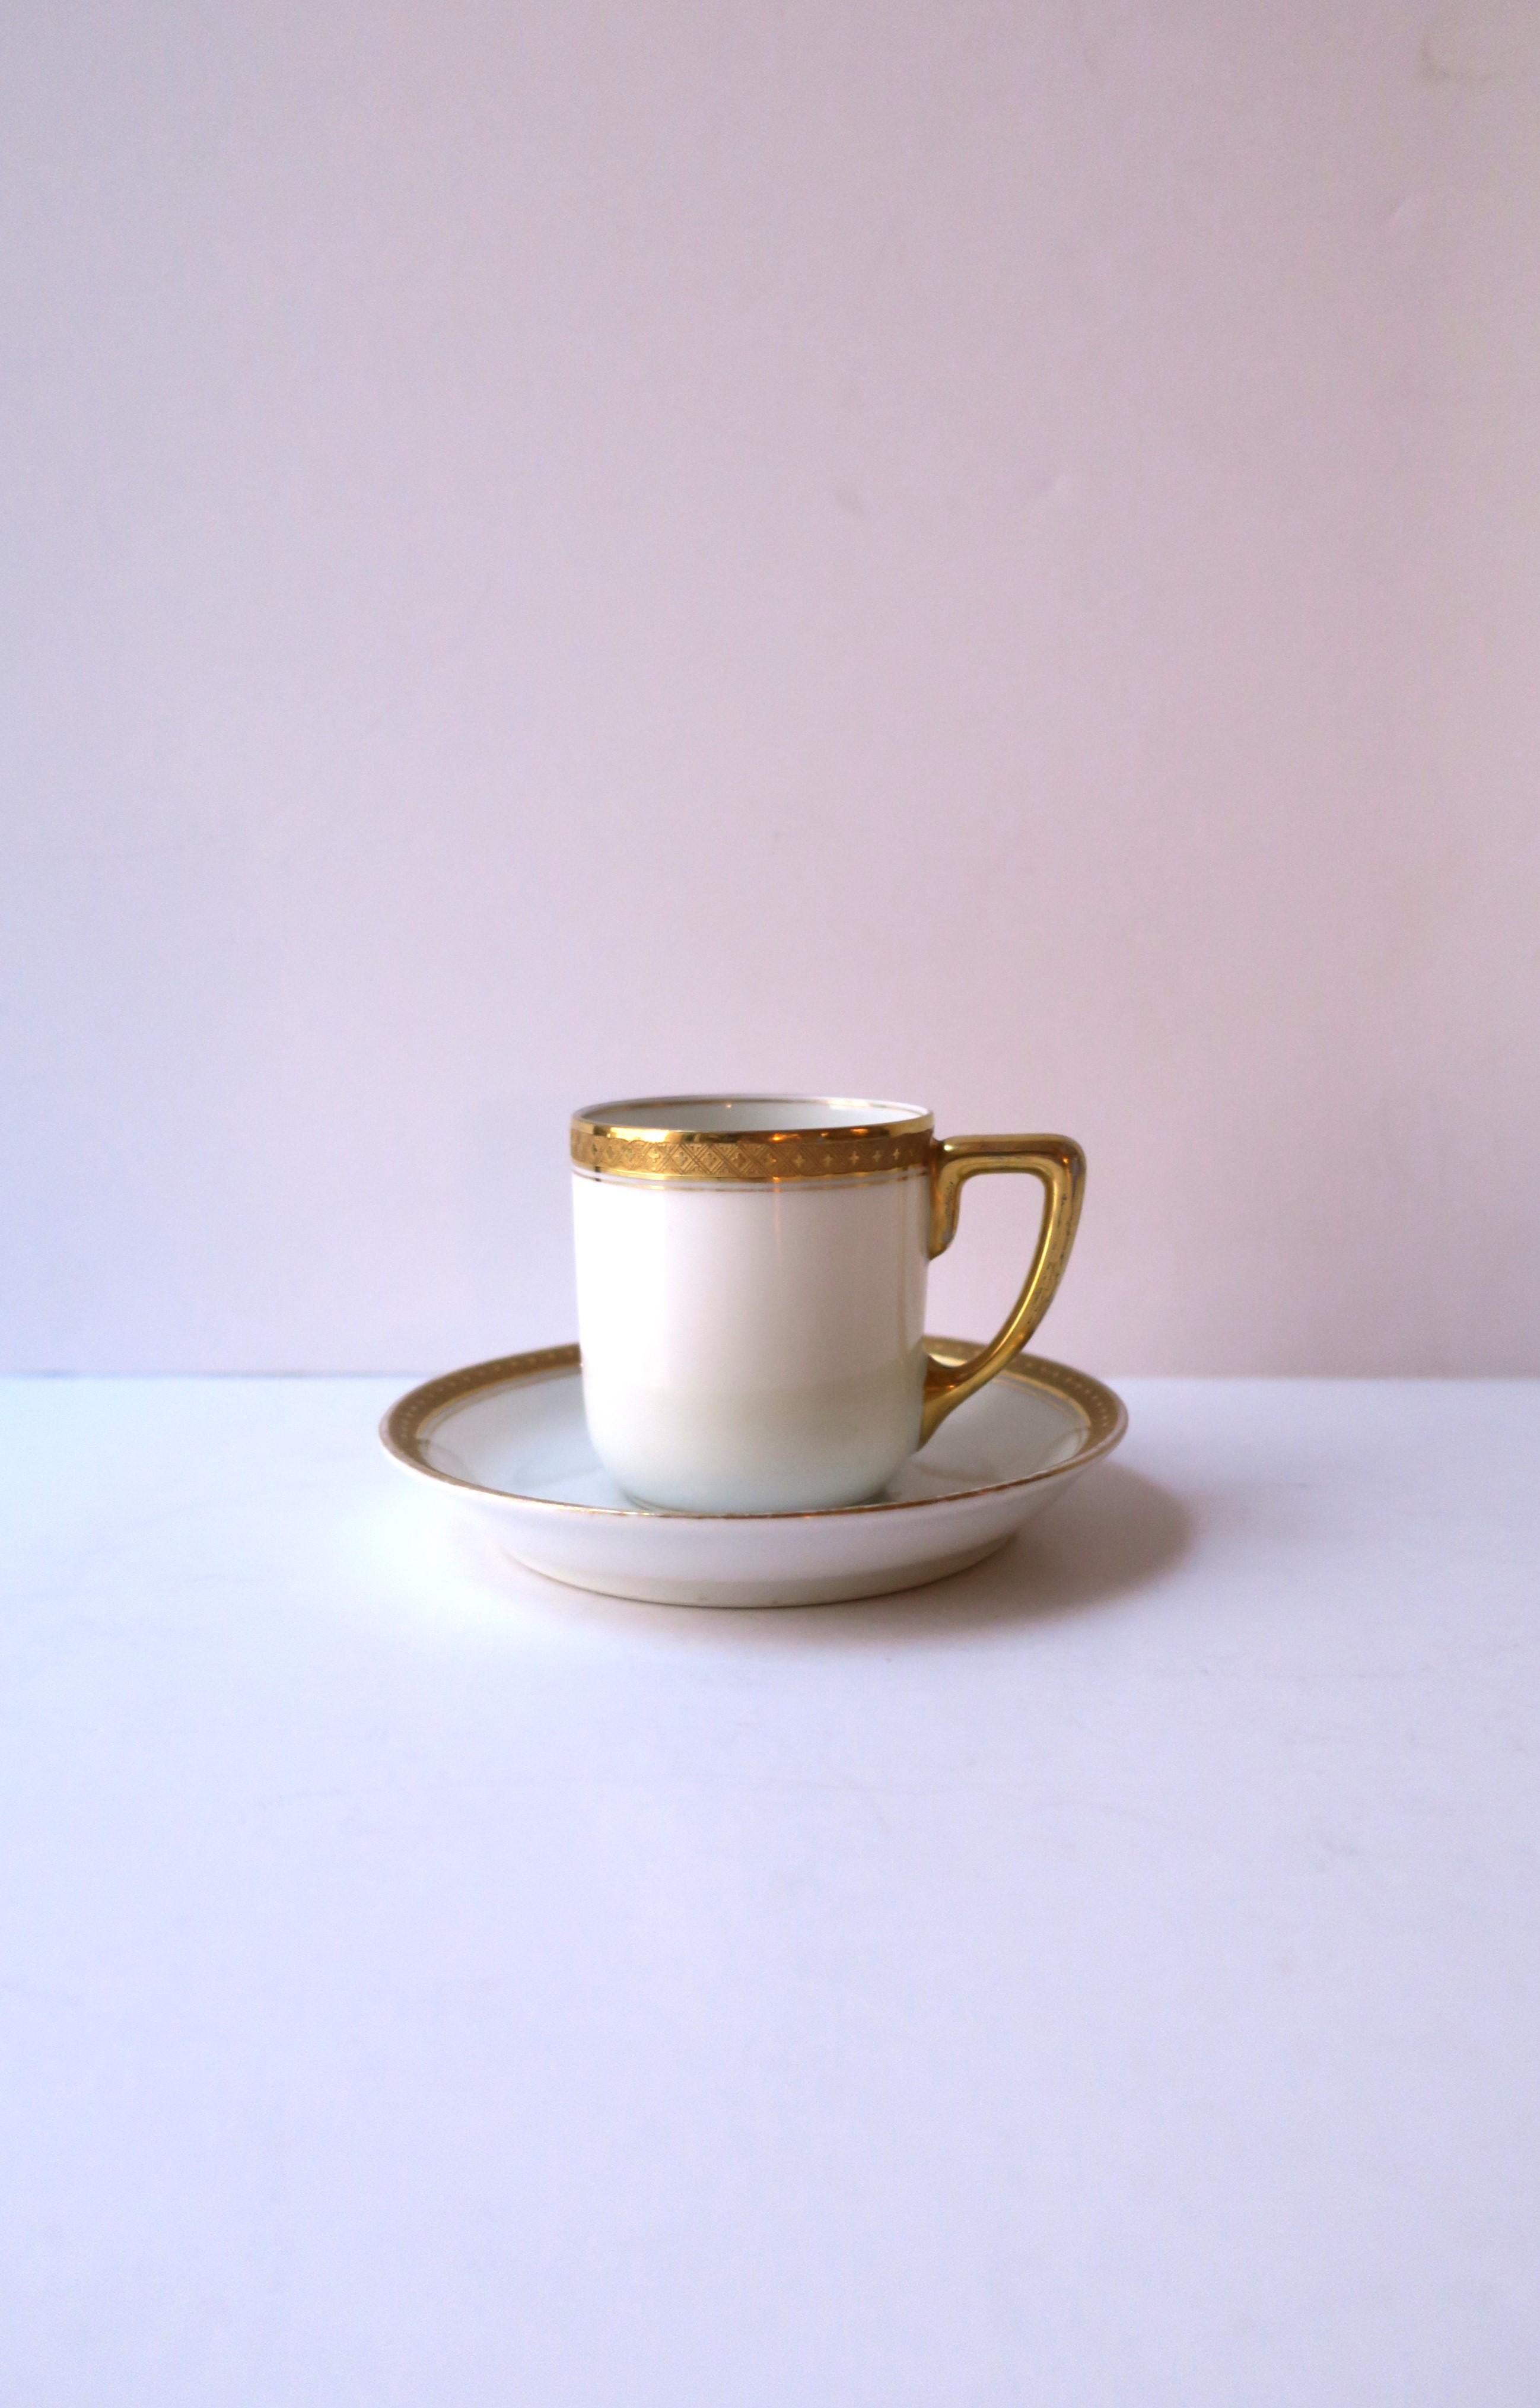 Belle tasse et soucoupe à café, espresso ou thé en porcelaine blanche allemande et dorée de Rosenthal, vers le début du 20e siècle, Allemagne. Cette tasse et cette soucoupe en porcelaine blanche présentent un léger relief doré sur le pourtour de la